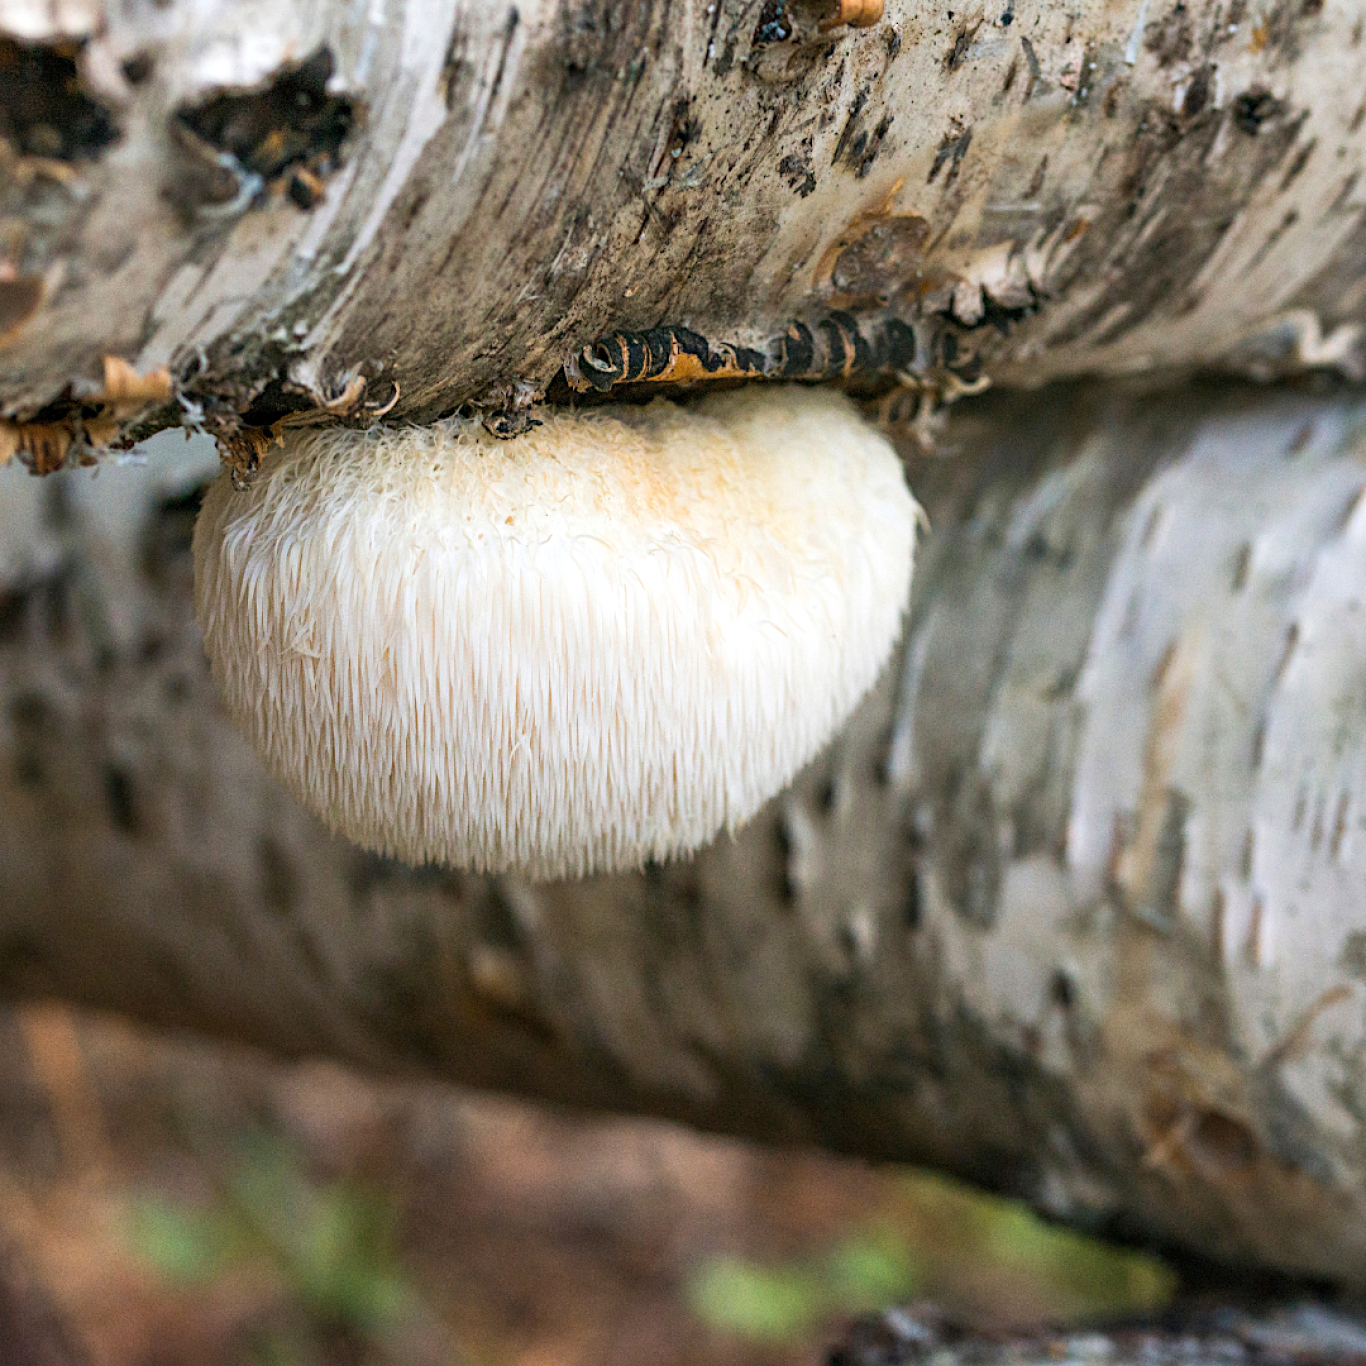  Uuringud on leidnud, et lõvilakk seened sisaldavad kahte erilist ühendit, mis võivad ajurakkude kasvu stimuleerida: heritsenoonid ja erinatsiinid. 